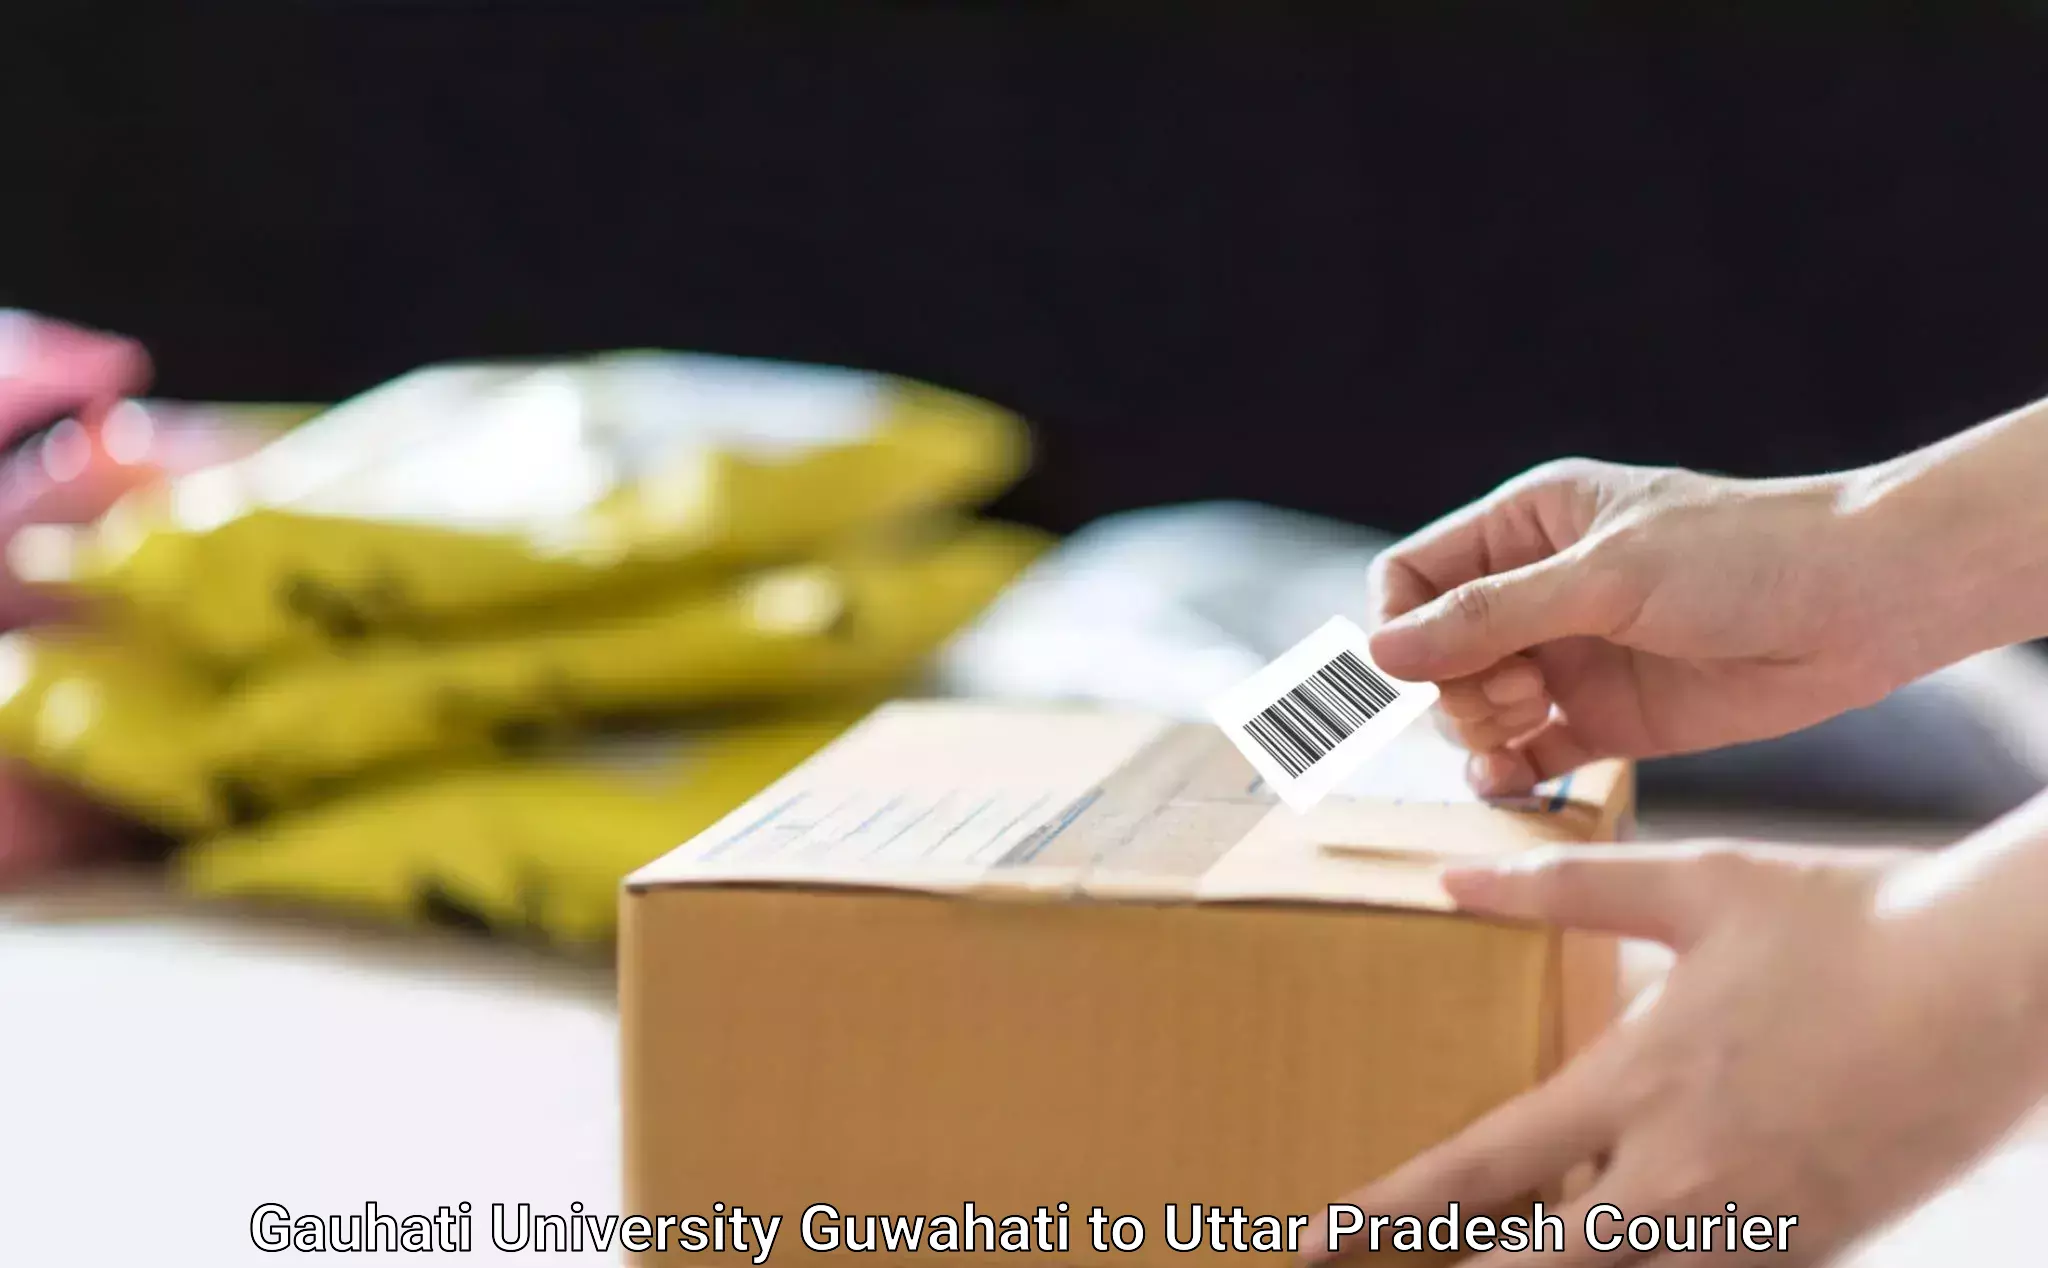 Corporate courier solutions in Gauhati University Guwahati to Uttar Pradesh